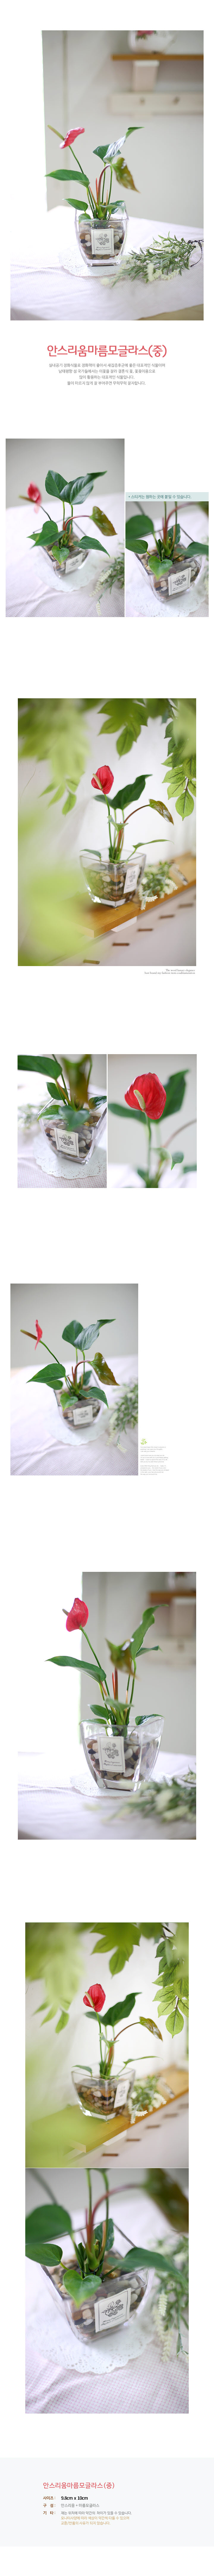 [행복한세상]안스리움마름모글라스(중) 15,900원 - 지승 인테리어, 가드닝, 식물, 수경식물 바보사랑 [행복한세상]안스리움마름모글라스(중) 15,900원 - 지승 인테리어, 가드닝, 식물, 수경식물 바보사랑